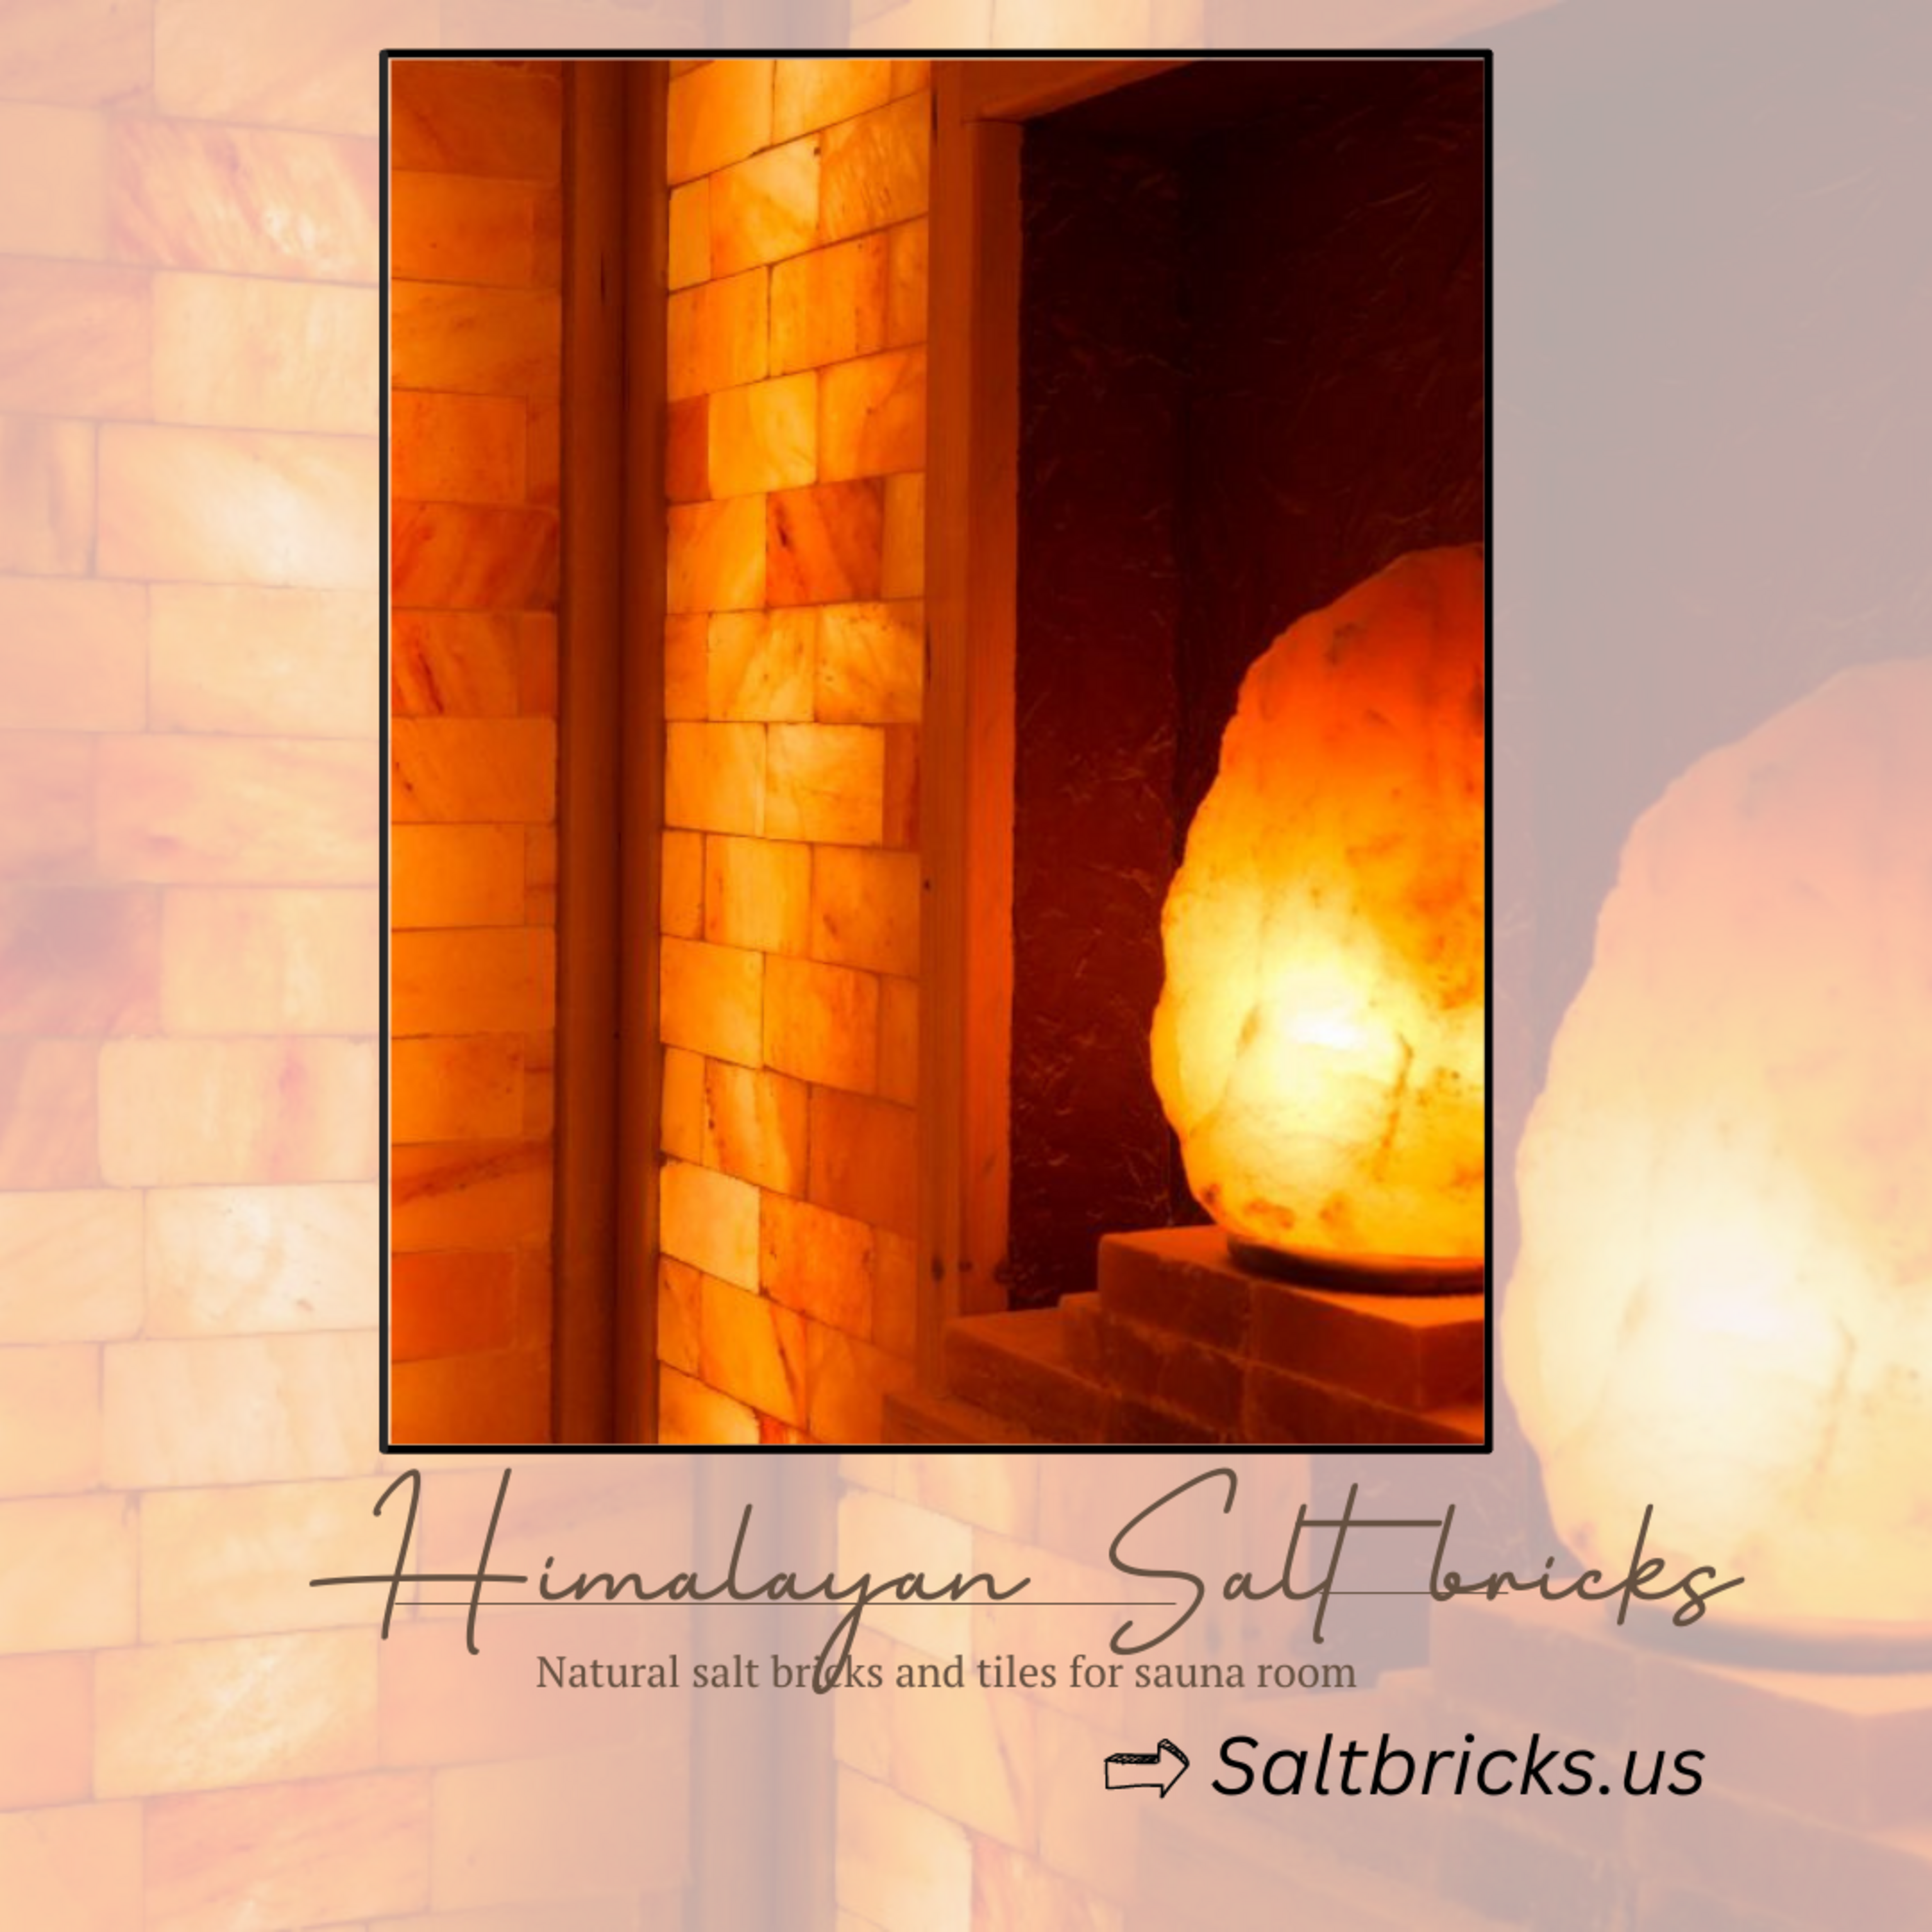 Natural salt bri{gks and tiles for sauna room

=&gt; Saltbricks.us